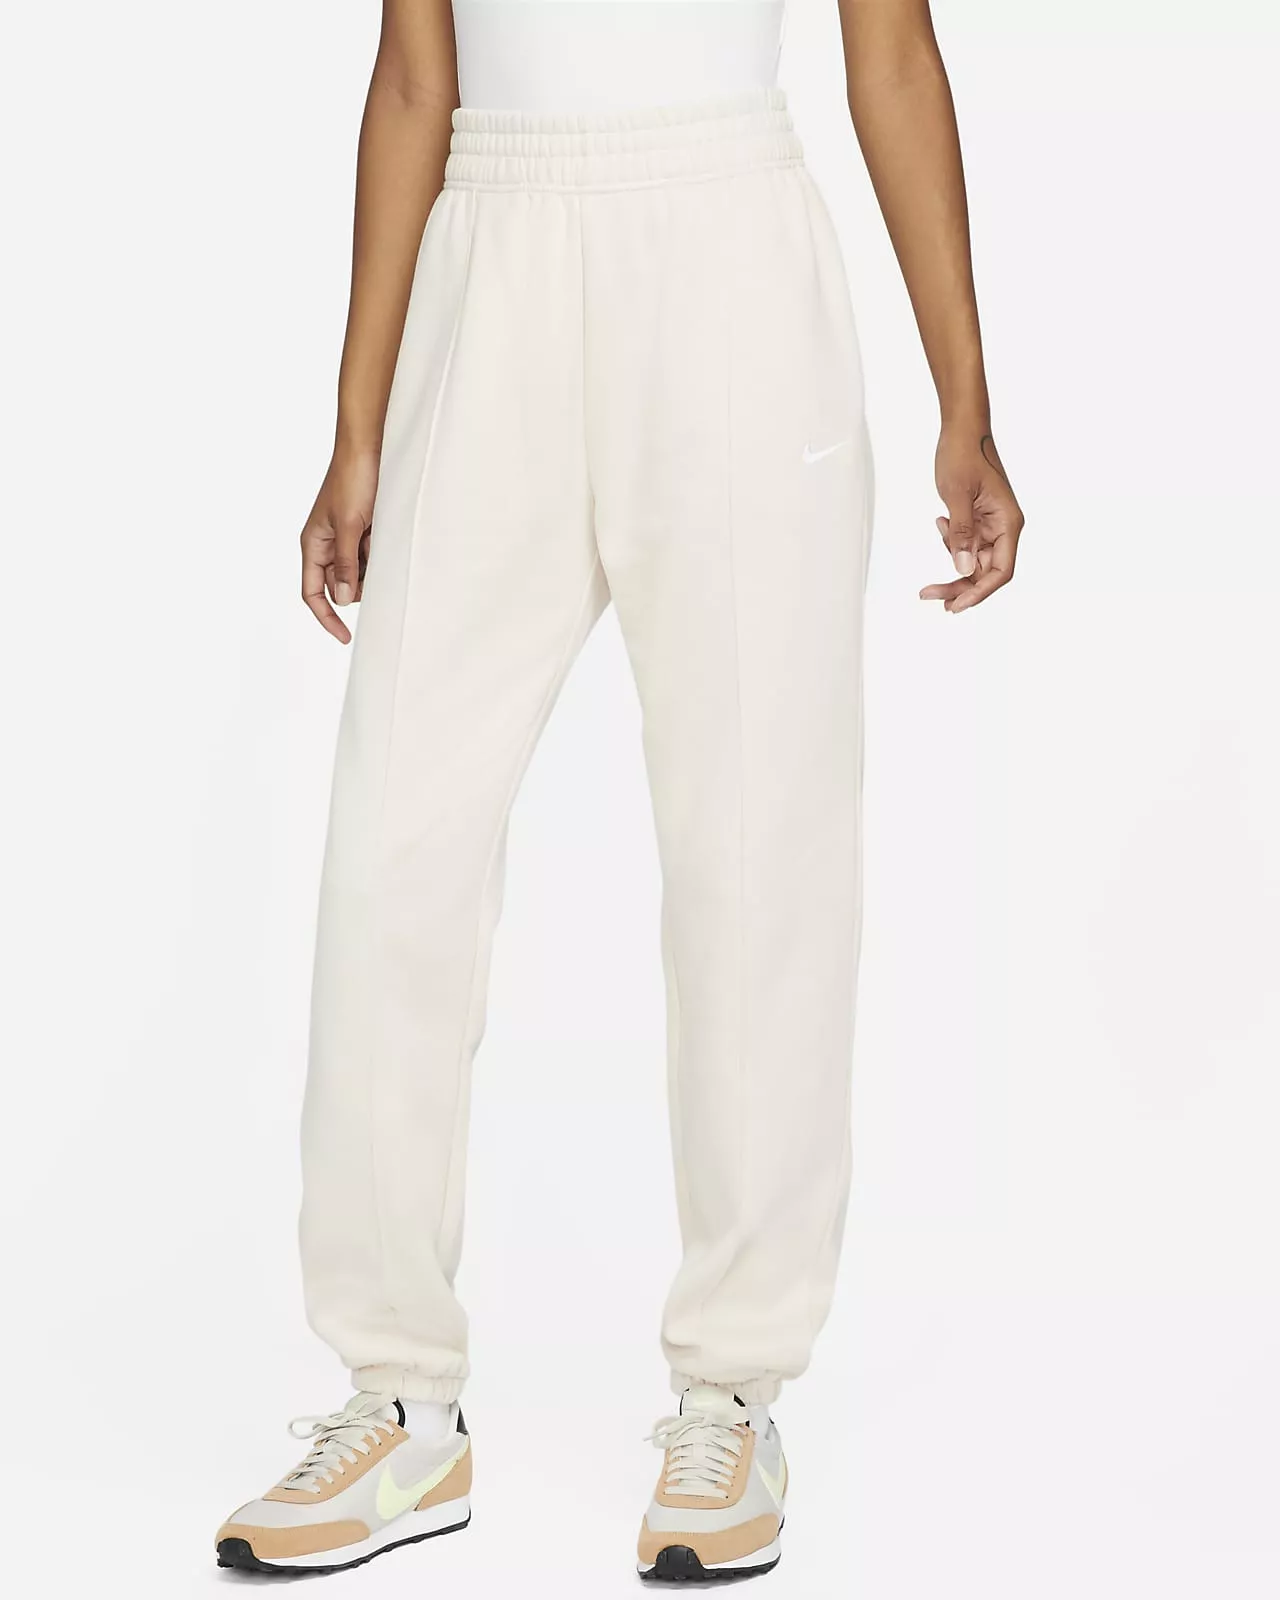 Nike Sportswear Essential CollectionWomen's Fleece Pants$60 